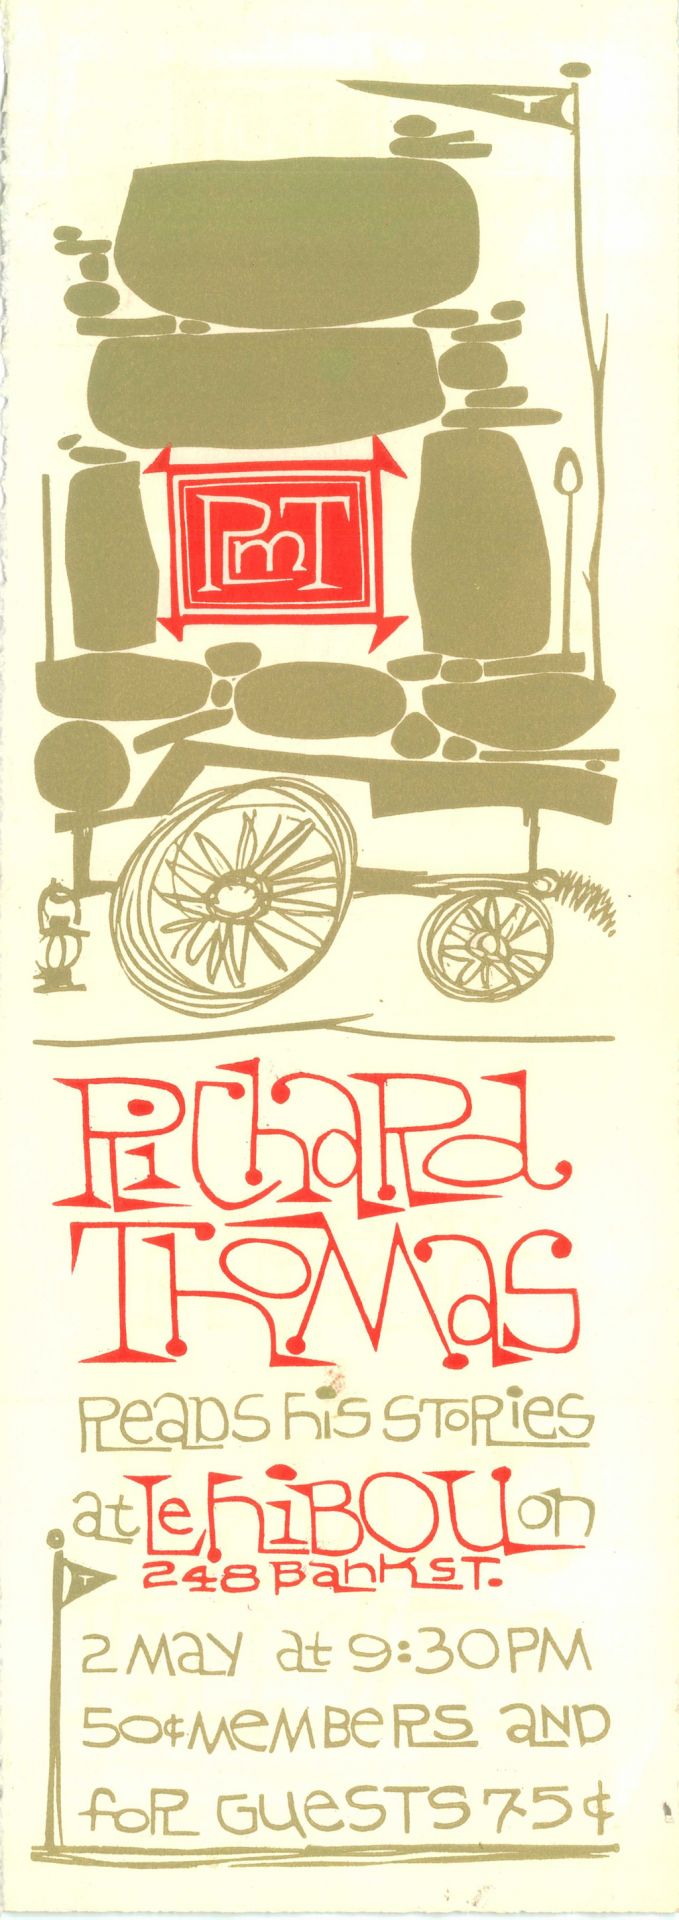 Richard Thomas Poster